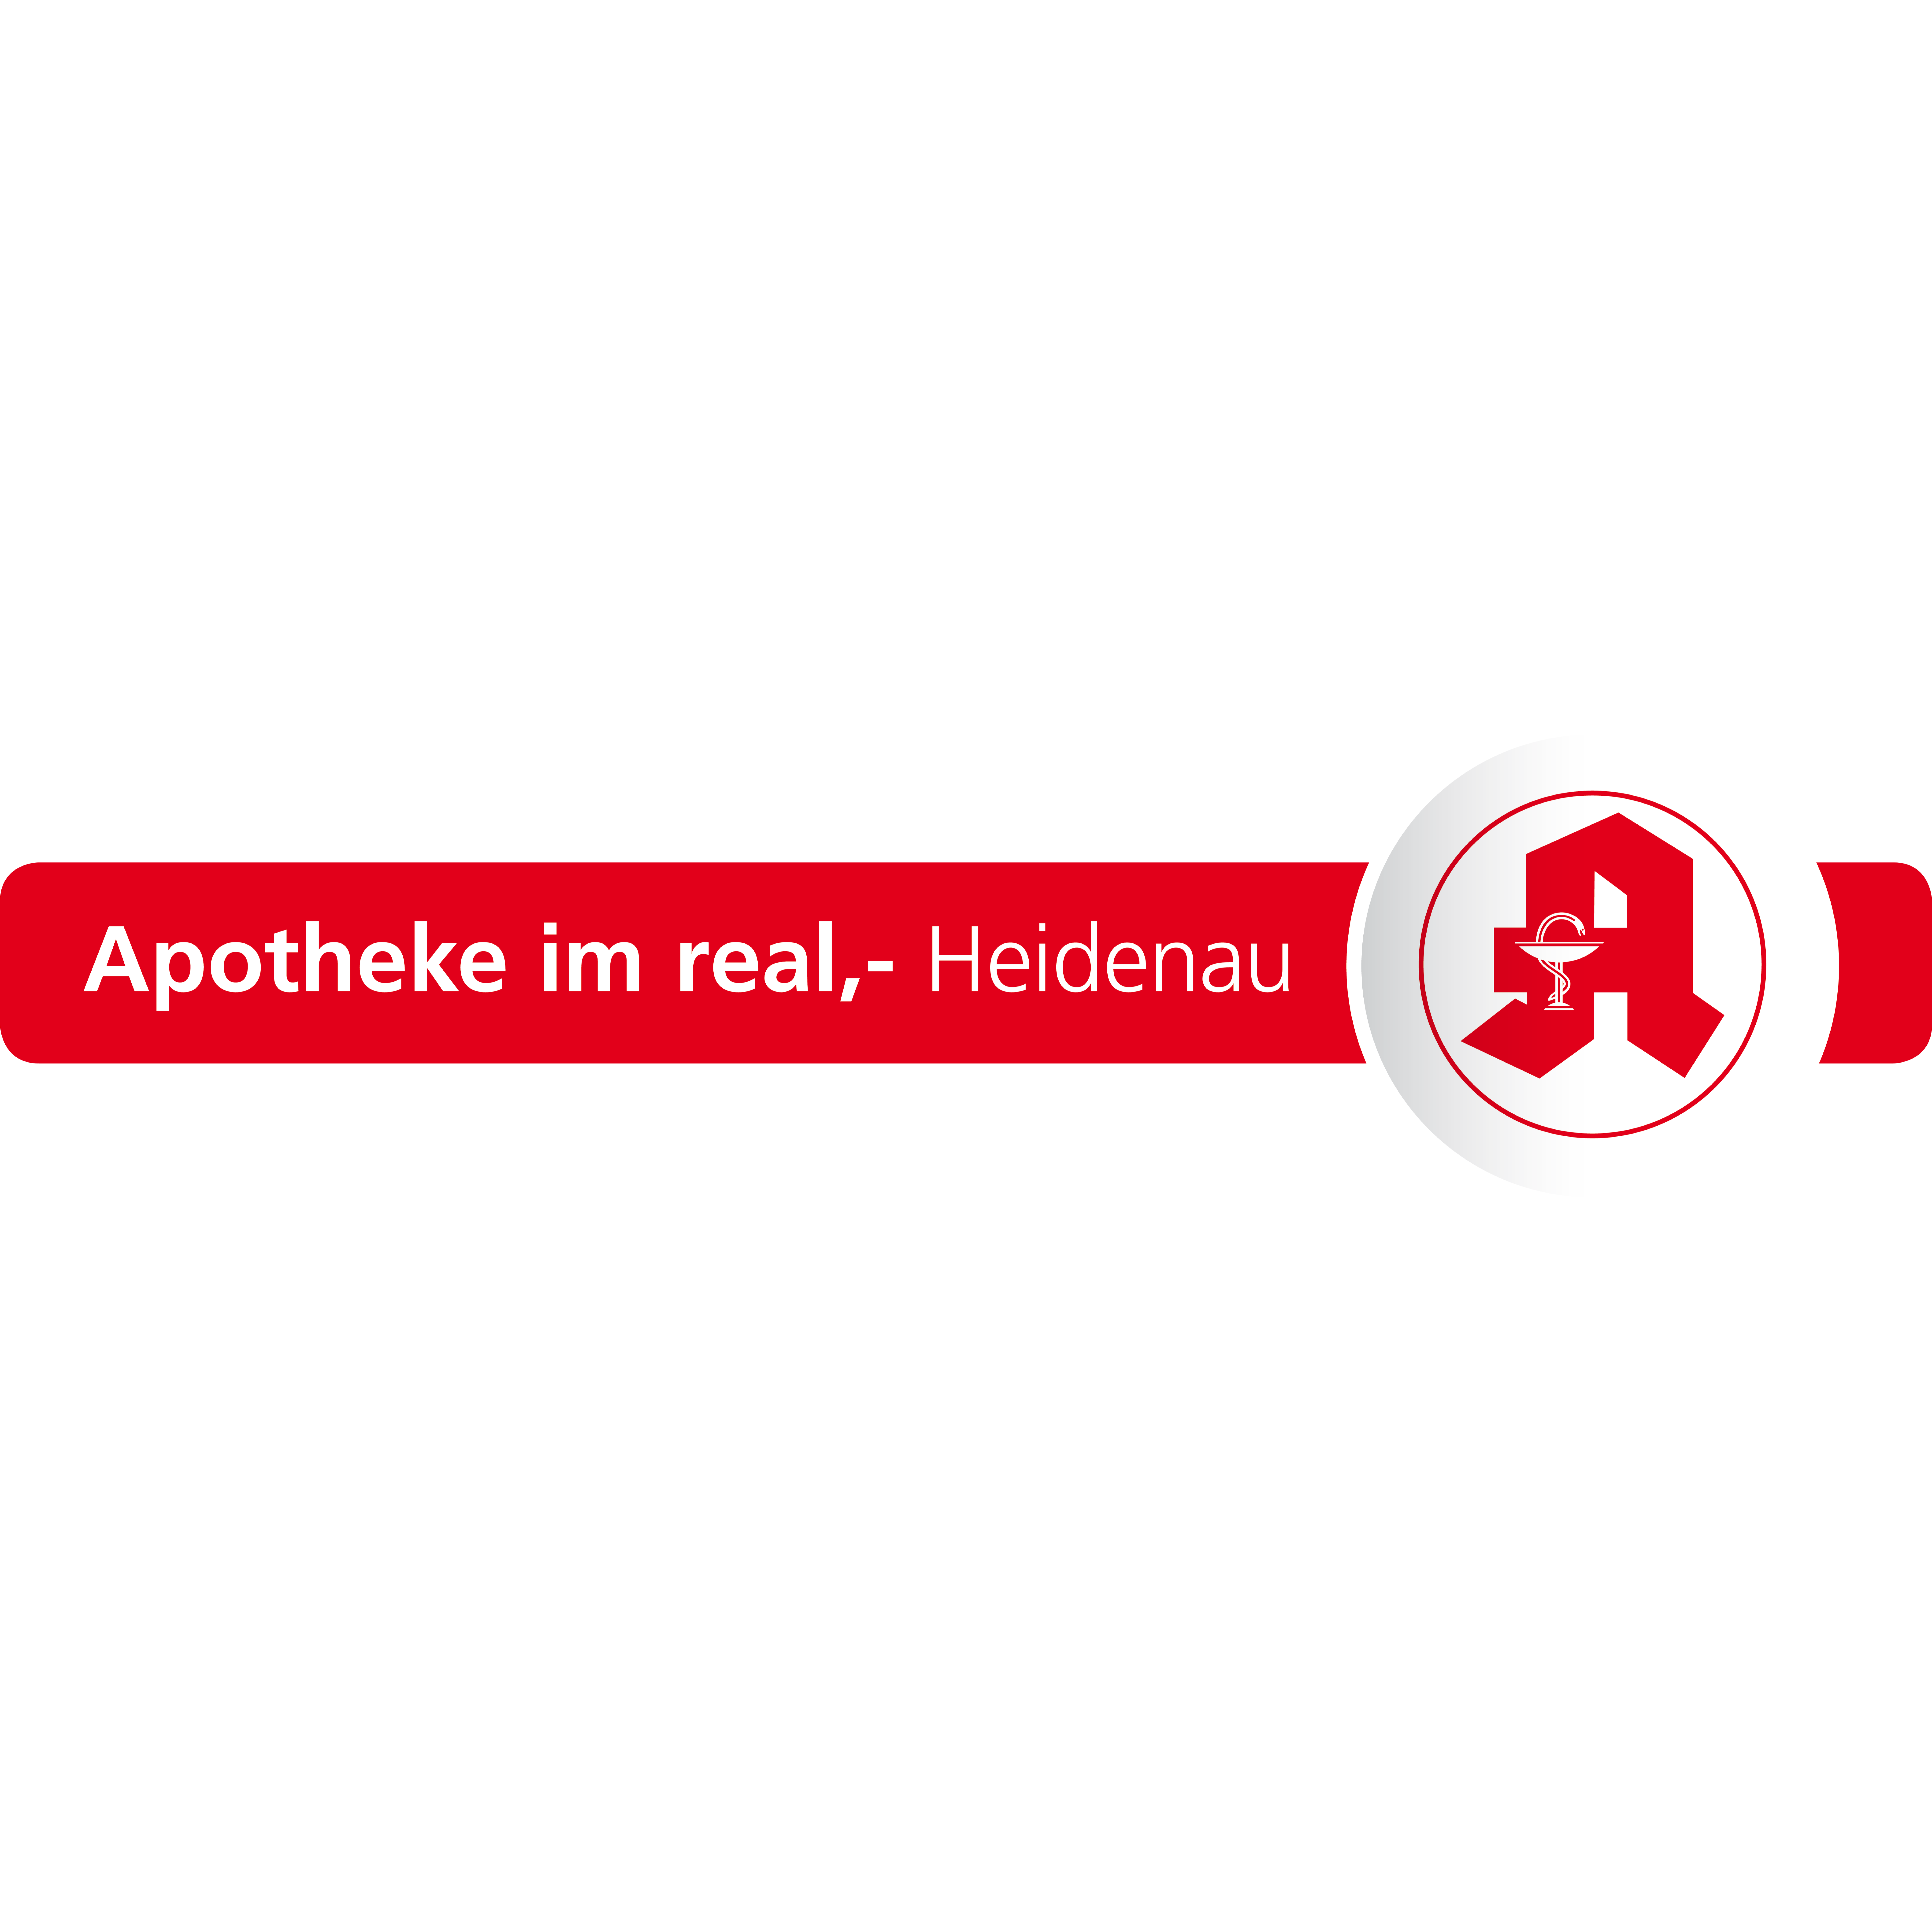 Apotheke im real,- Heidenau in Heidenau in Sachsen - Logo